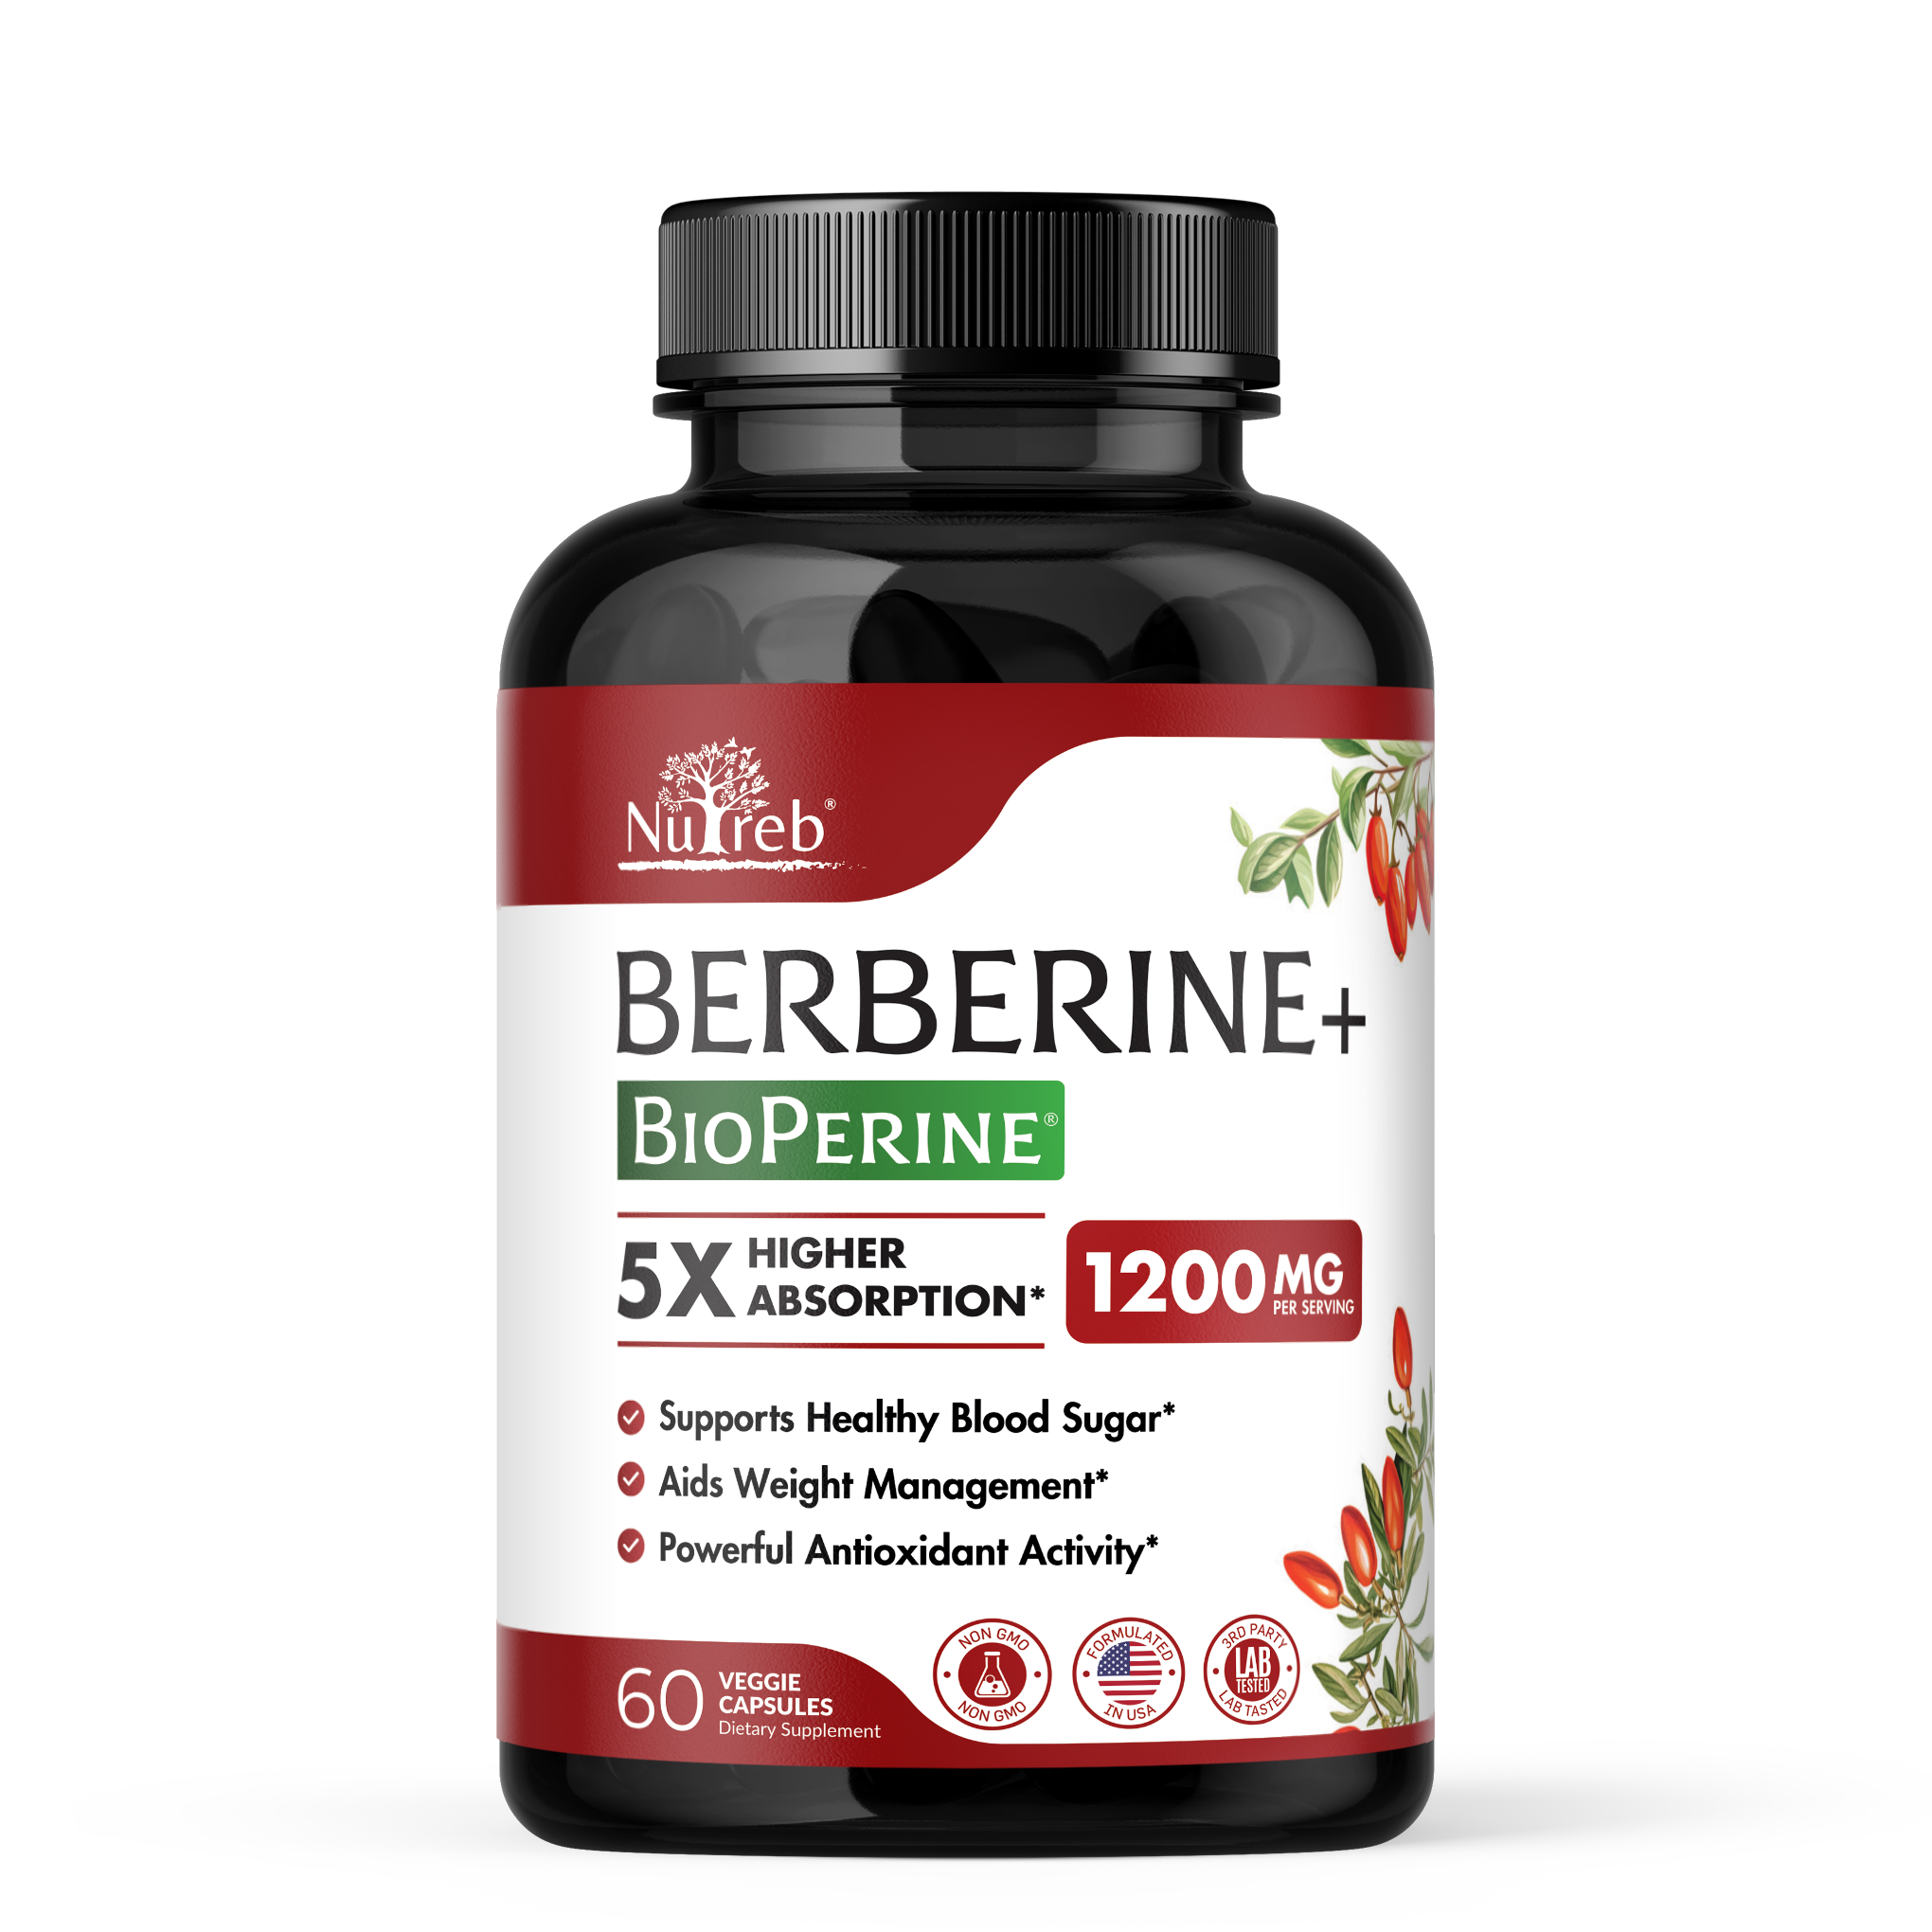 Berberine with BioPerine